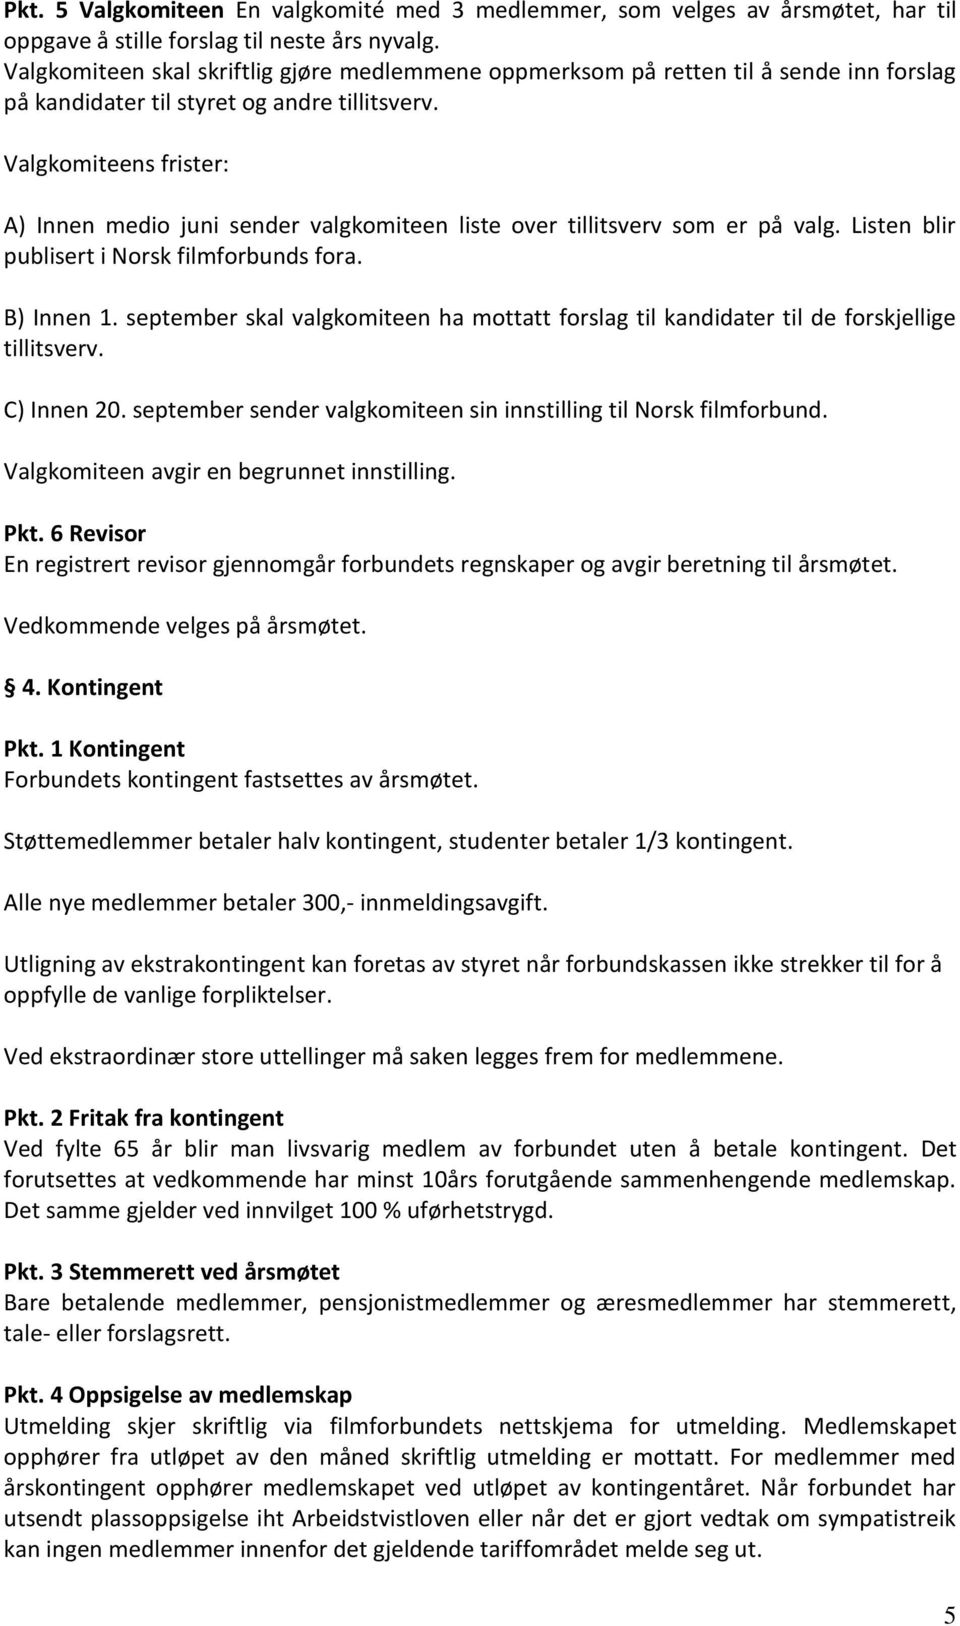 Valgkomiteens frister: A) Innen medio juni sender valgkomiteen liste over tillitsverv som er på valg. Listen blir publisert i Norsk filmforbunds fora. B) Innen 1.